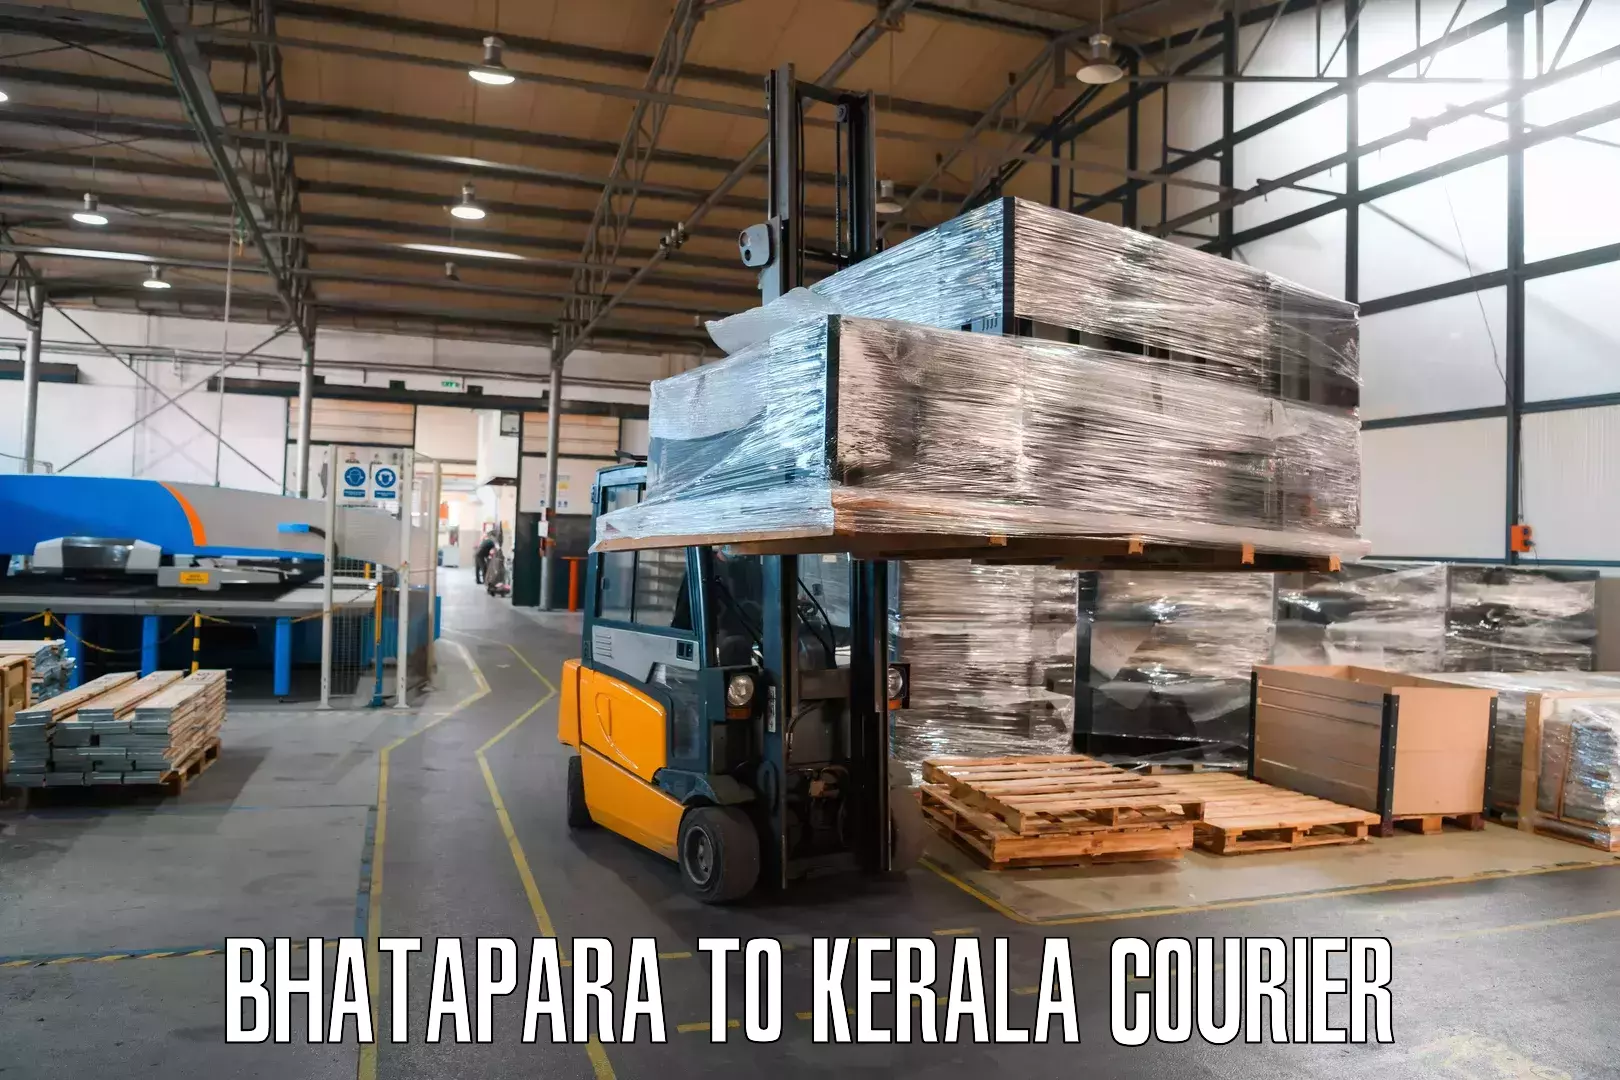 Express logistics Bhatapara to Haripad